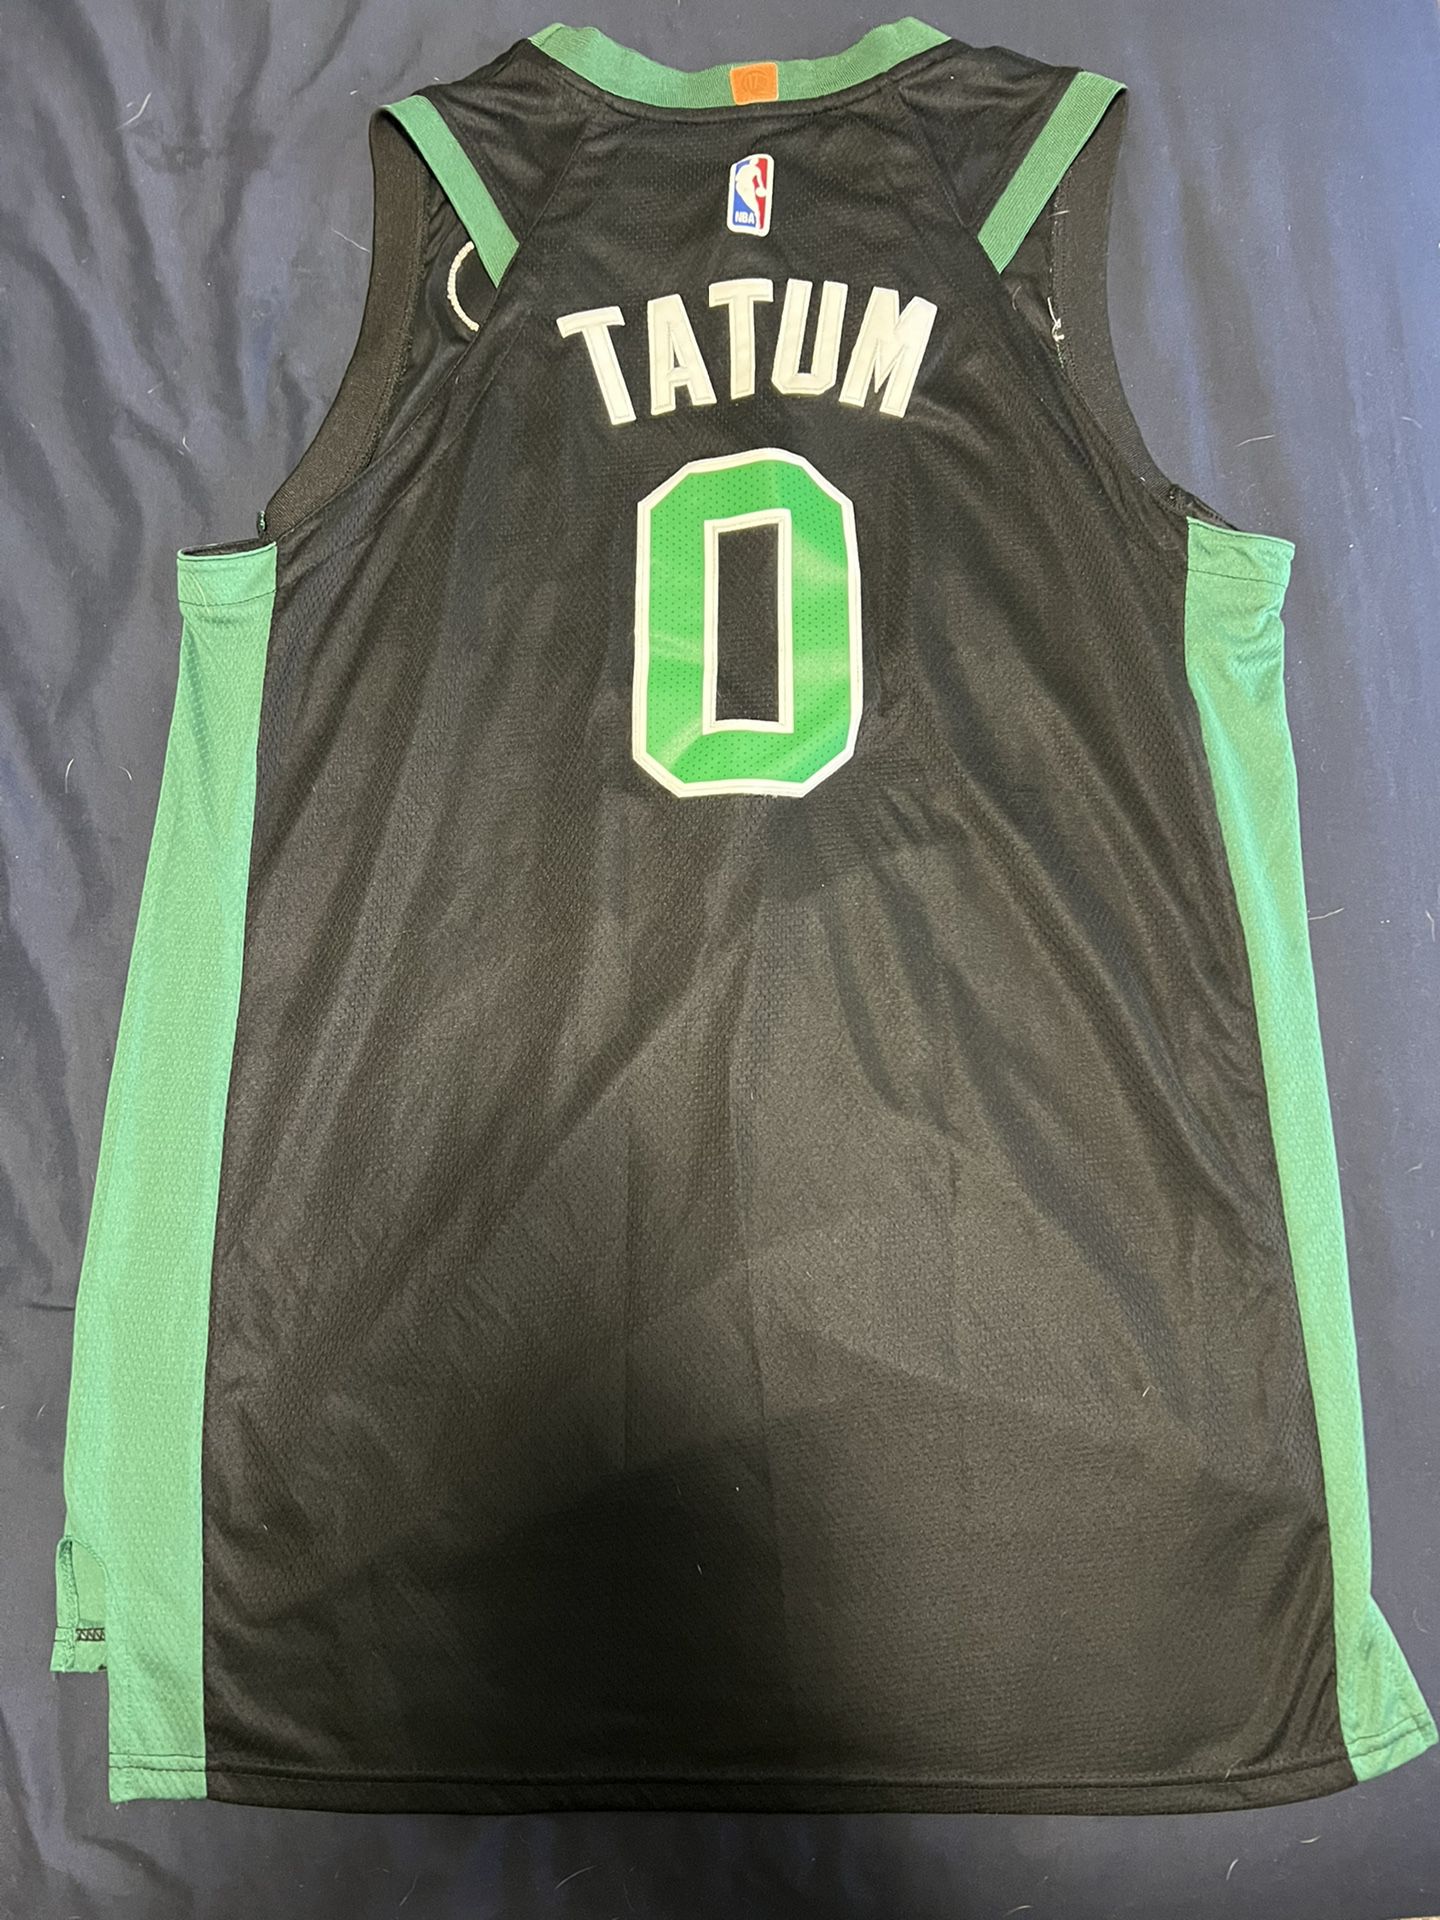 Jayson Tatum Boston Celtics City Jersey for Sale in Miami, FL - OfferUp